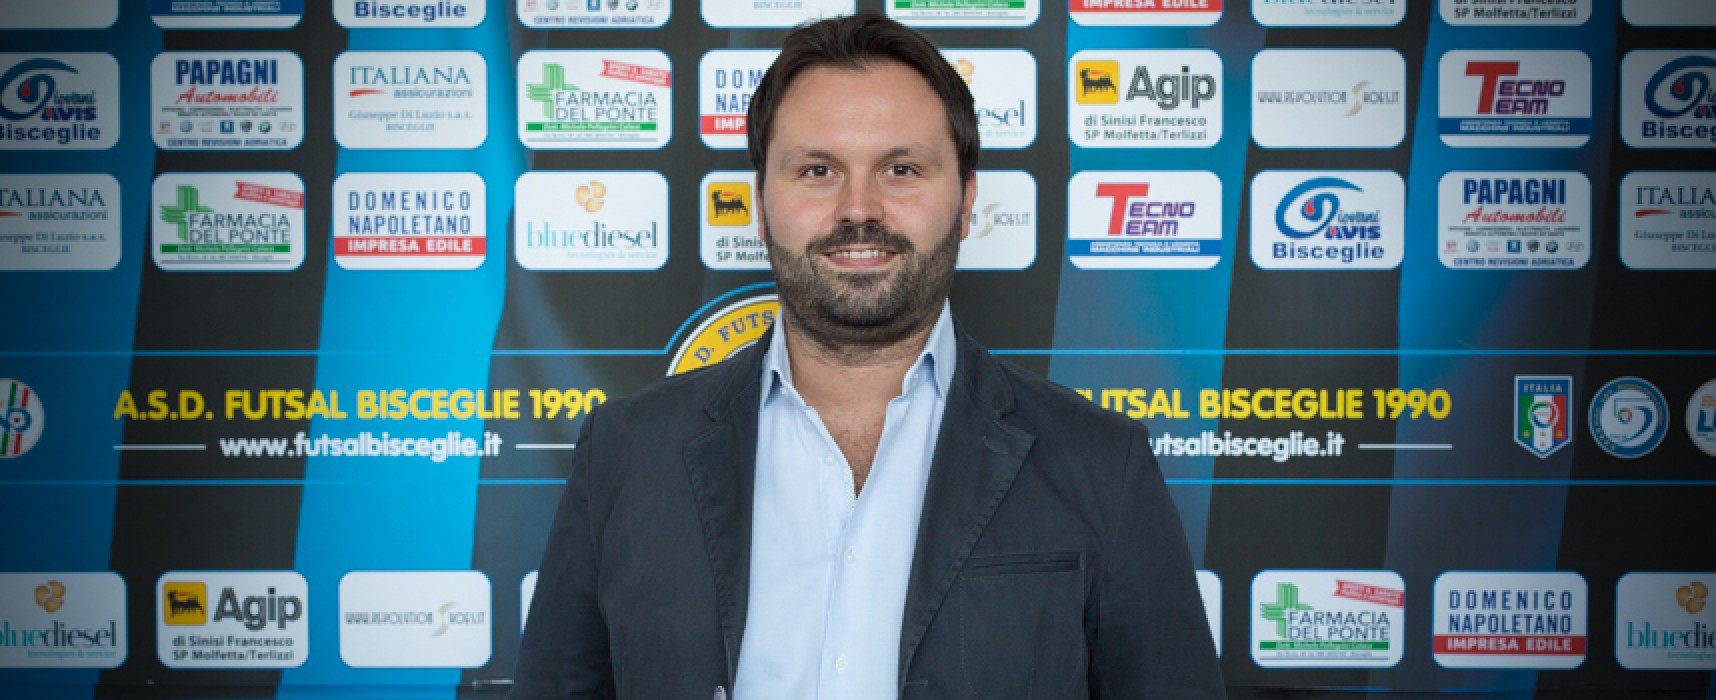 Futsal Bisceglie, Anellino: “Risultati positivi generano entusiasmo in campo e fuori”